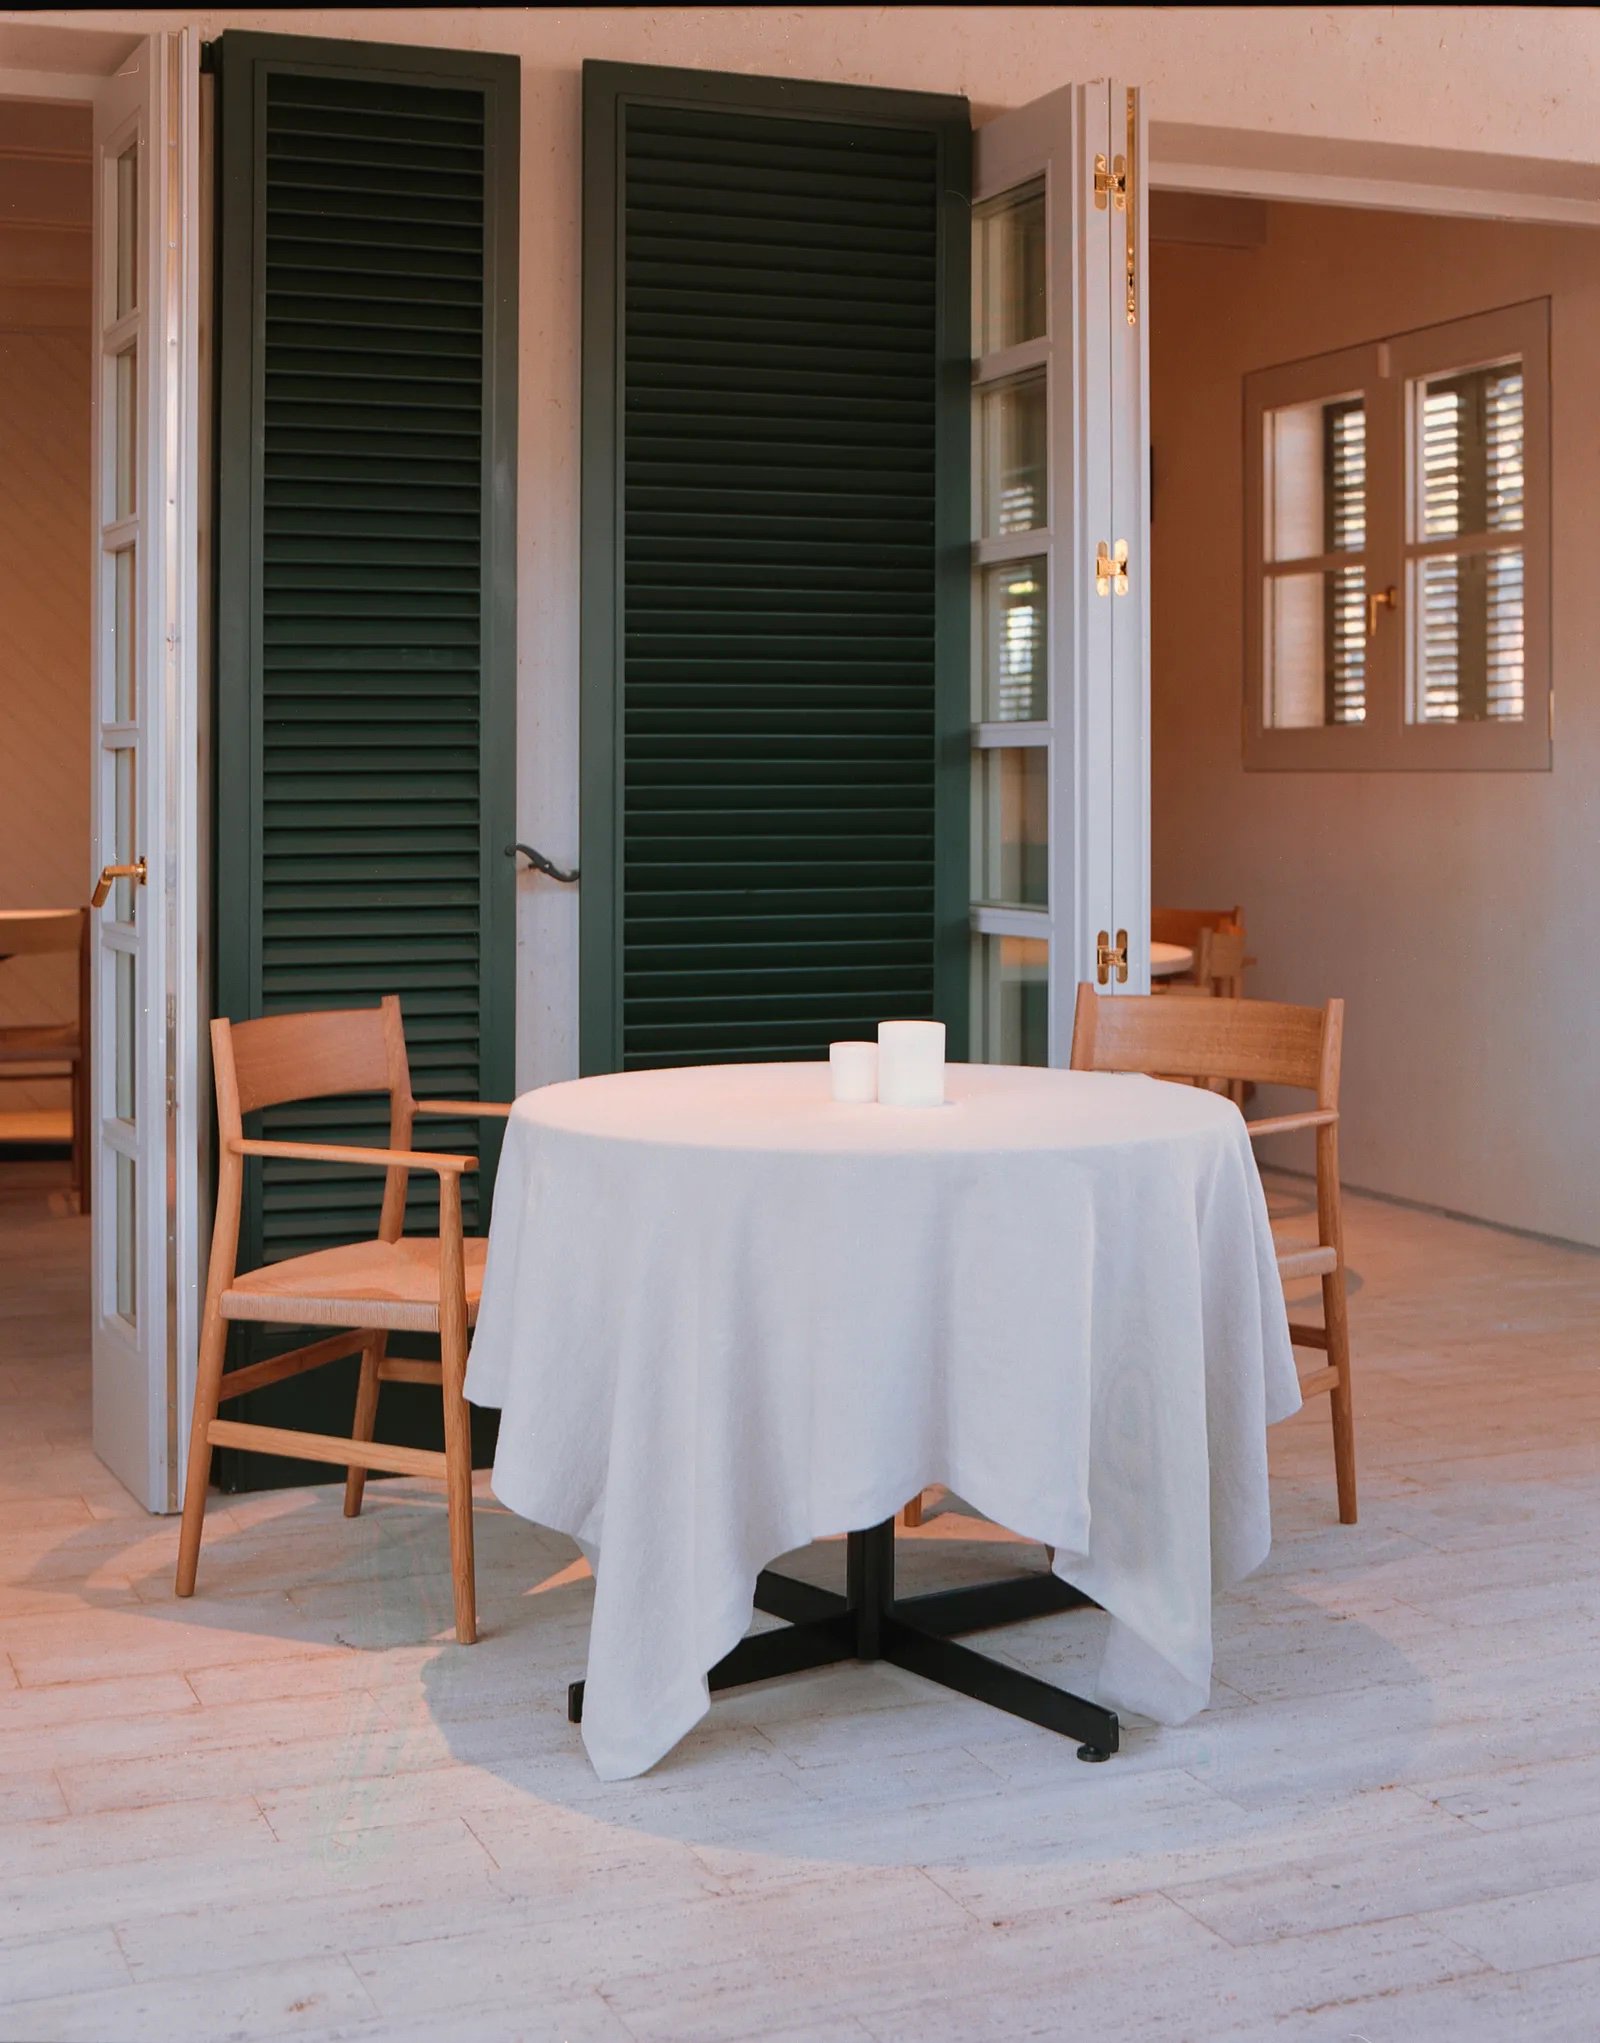 Contraventanas verde, suelo baldosa, mesa con mantel blanco